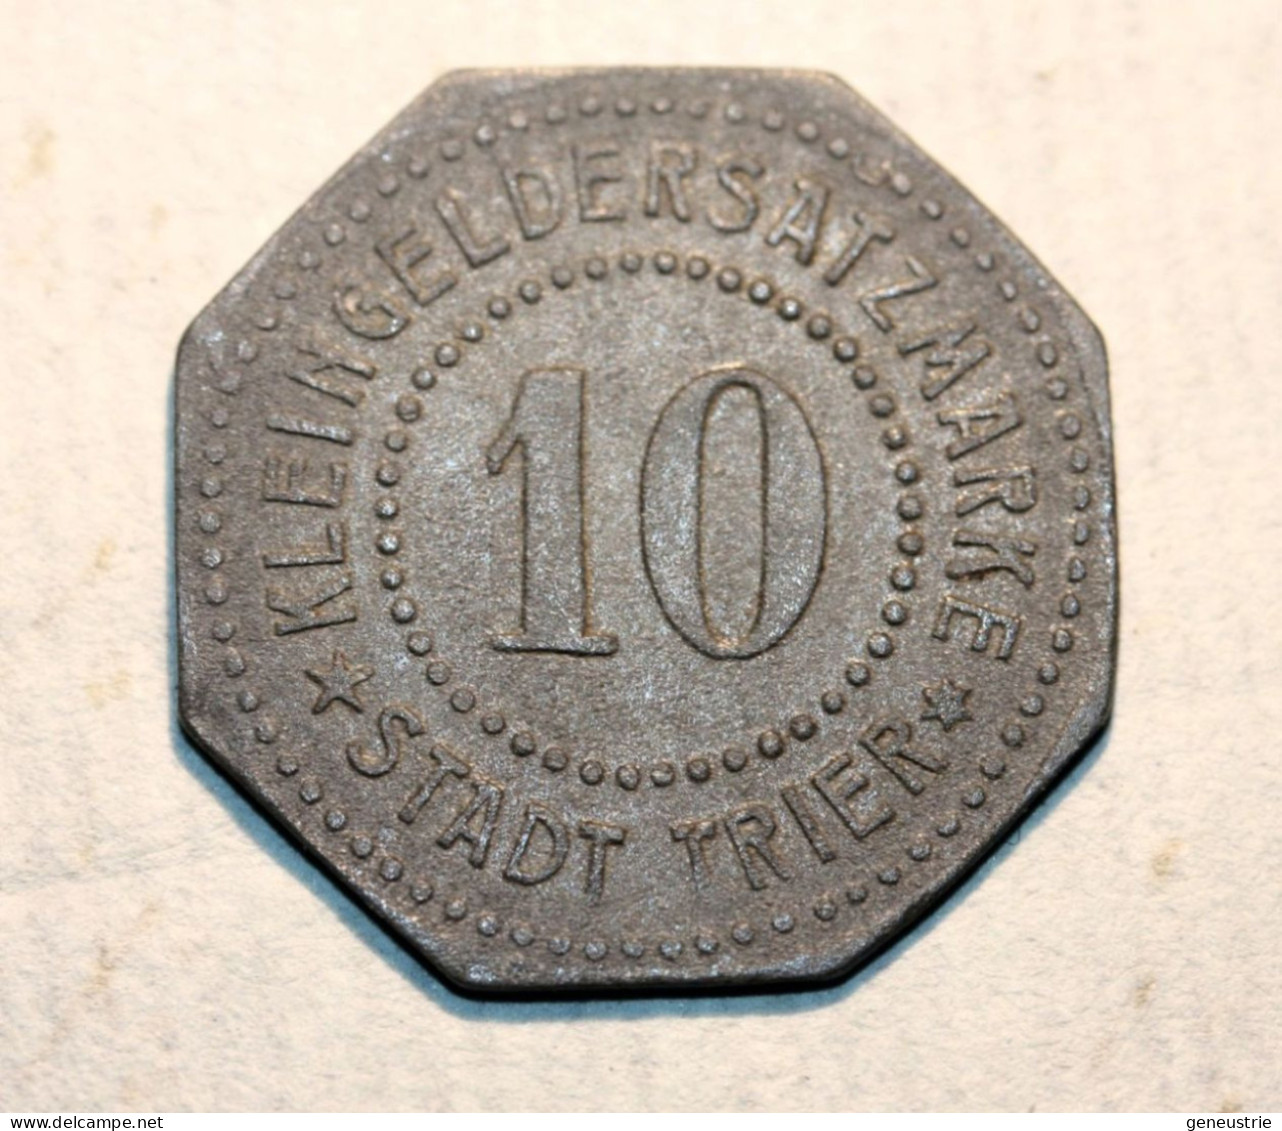 WWI Monnaie Jeton De Necessité De La Ville De Trêves "10 Stadt Trier" German Emergency Token WW1 - Noodgeld